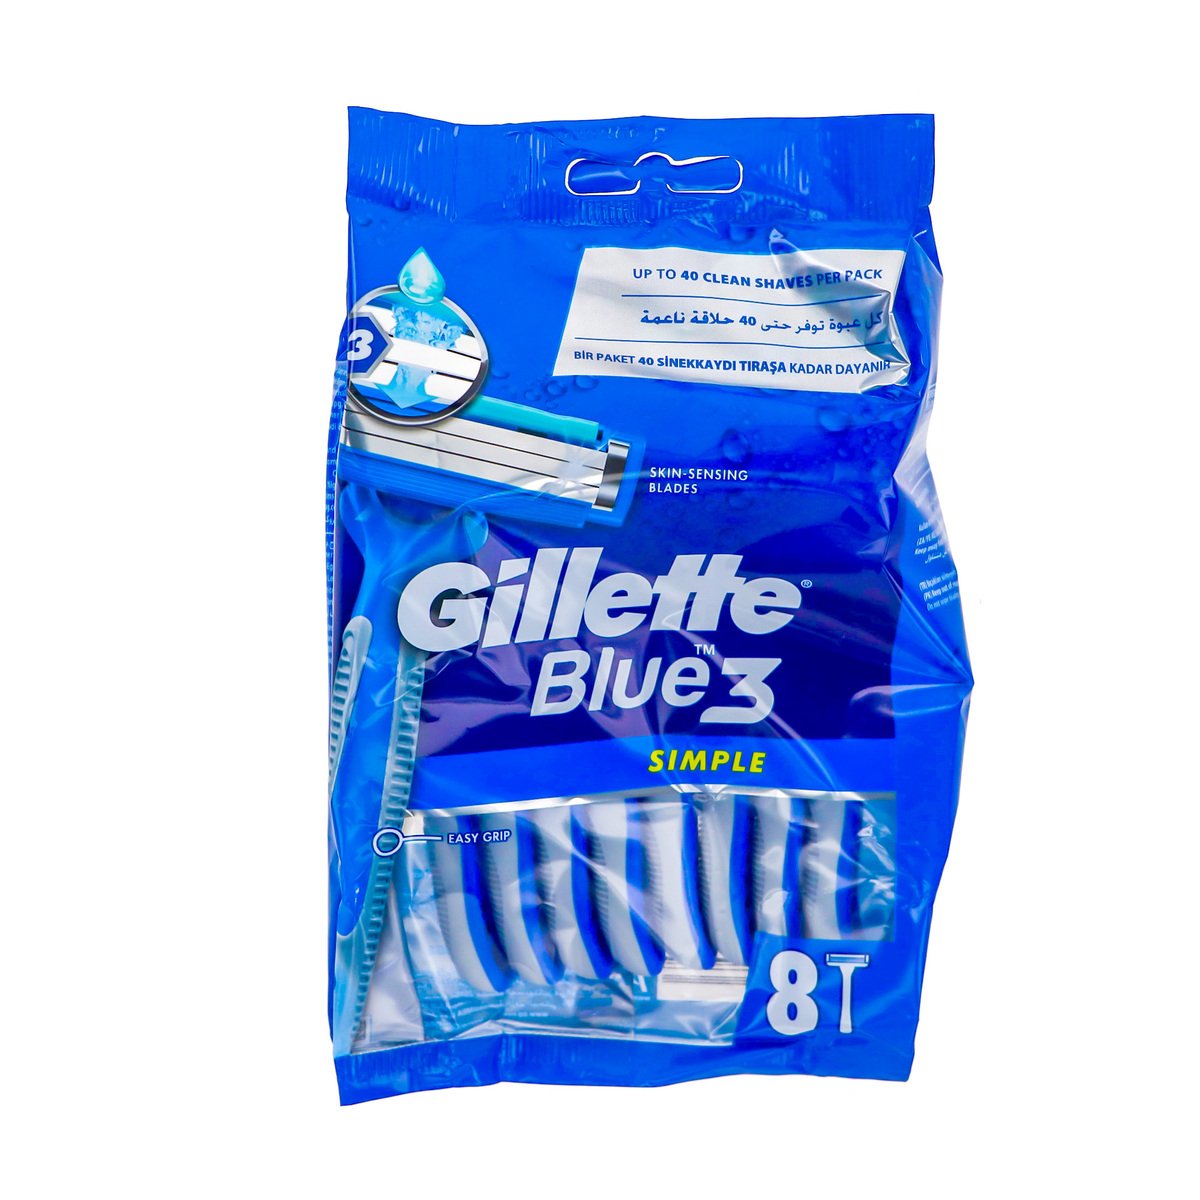 Gillette Razor Blue 3 Simple 8 pcs